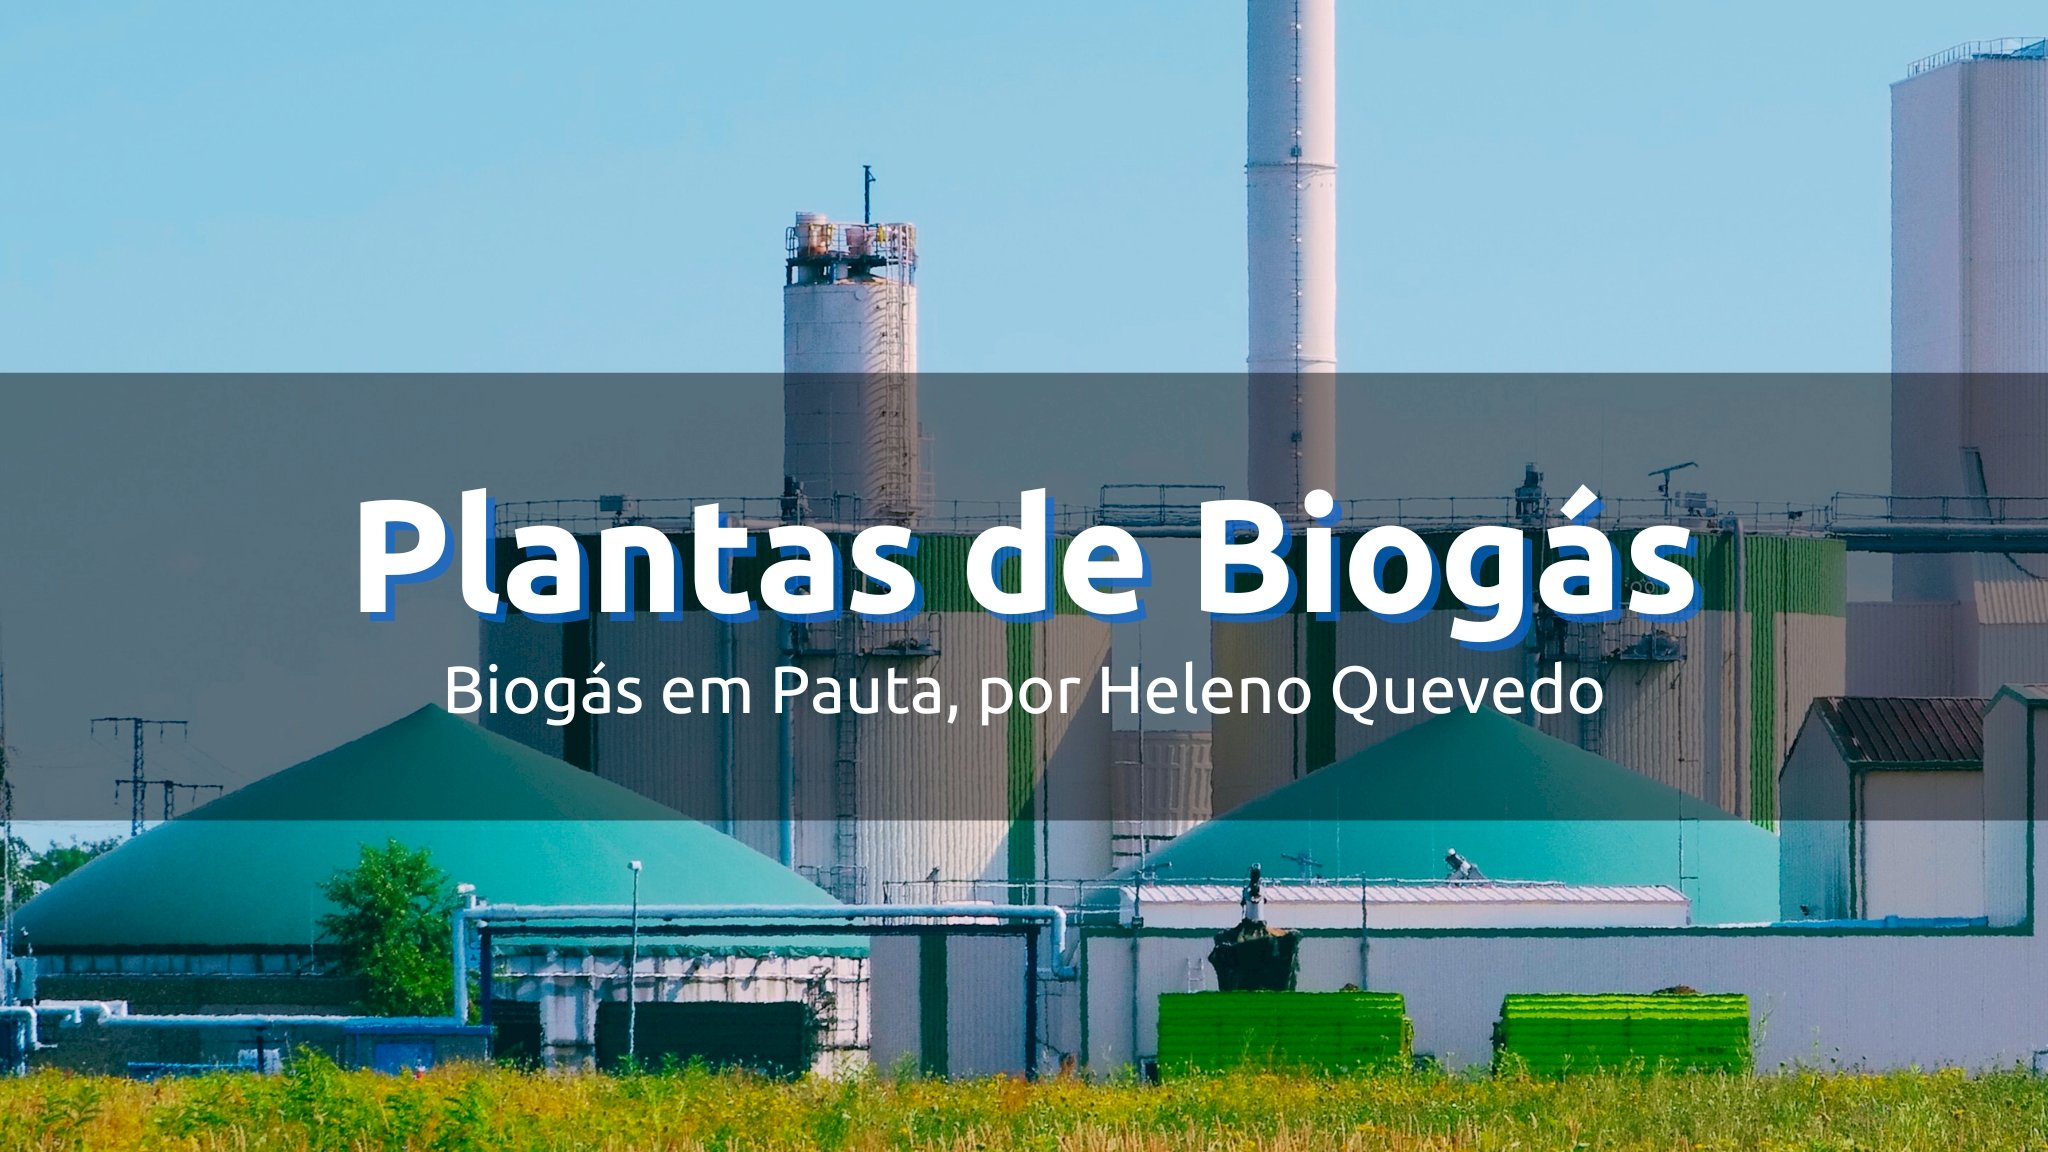 Plantas de Biogás em Operação: além dos registros oficiais